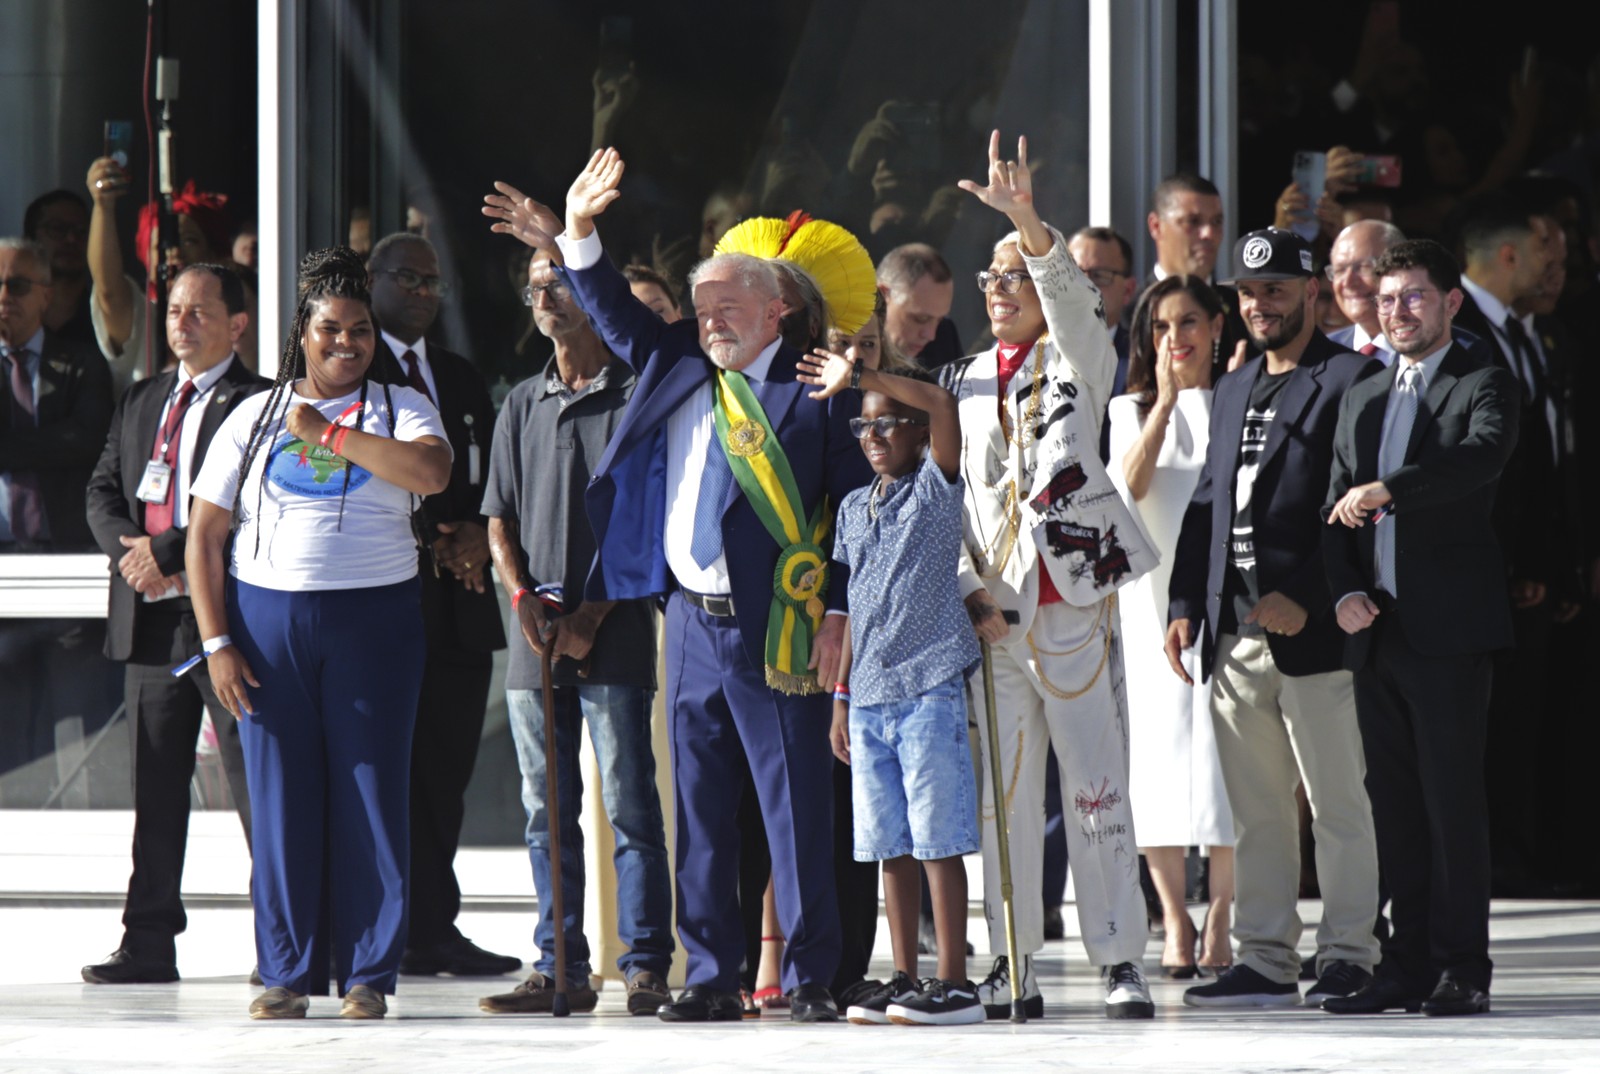 Lula preenche ausência do antecessor por representantes do povo brasileiro na passagem da faixa presidencial — Foto: Domingos Peixoto/Agência O Globo